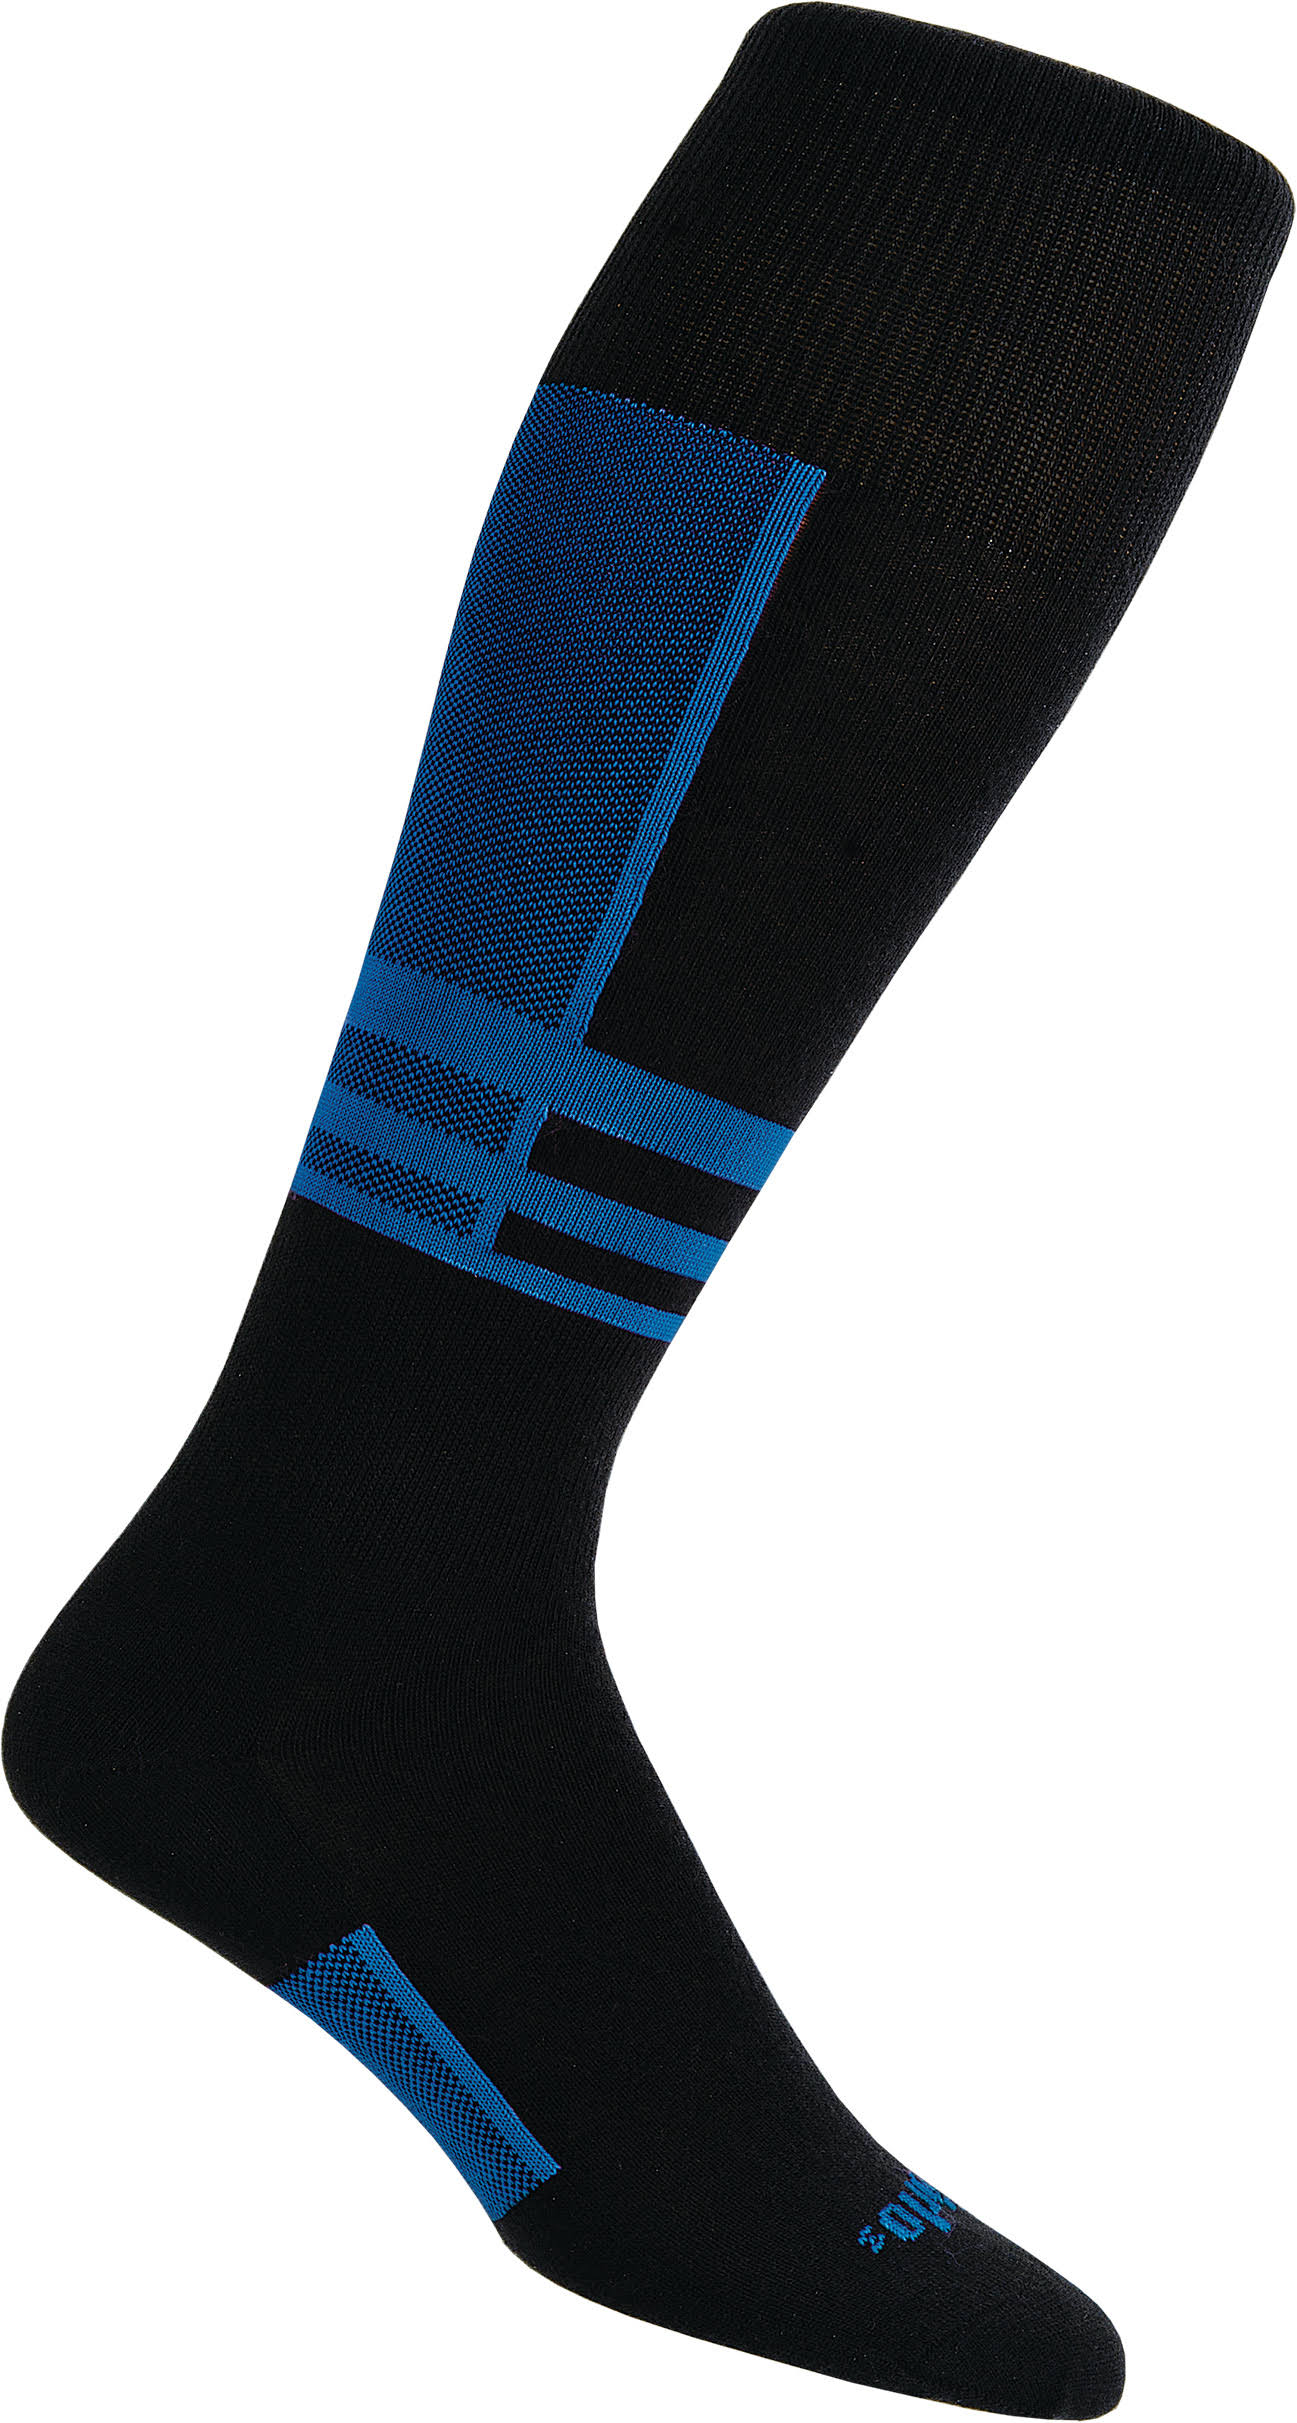 Thorlo Ultra Light Ski Liner Sock - Blue/Black, 5.5-7.5